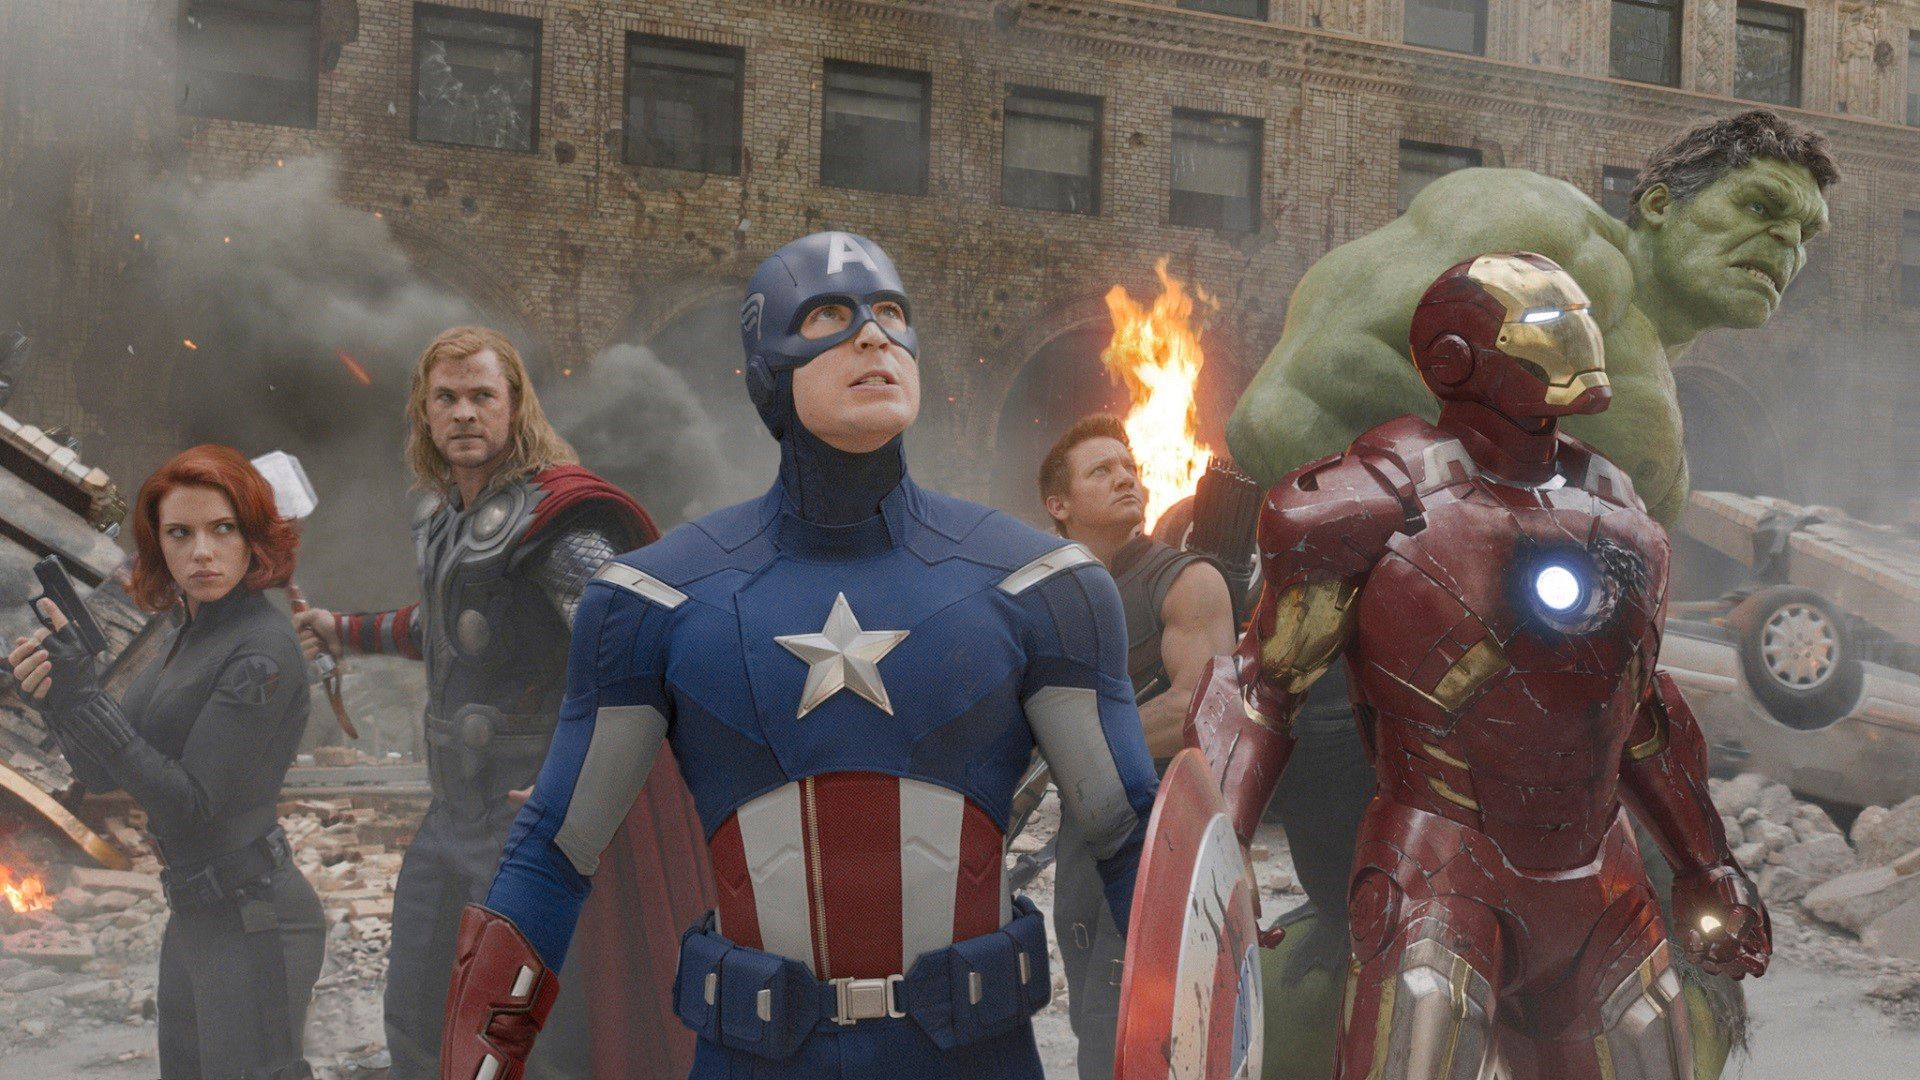 Captain Marvel mid credit scene explained: Here's why the Captain Marvel  post credits scene is good news for Avengers Endgame